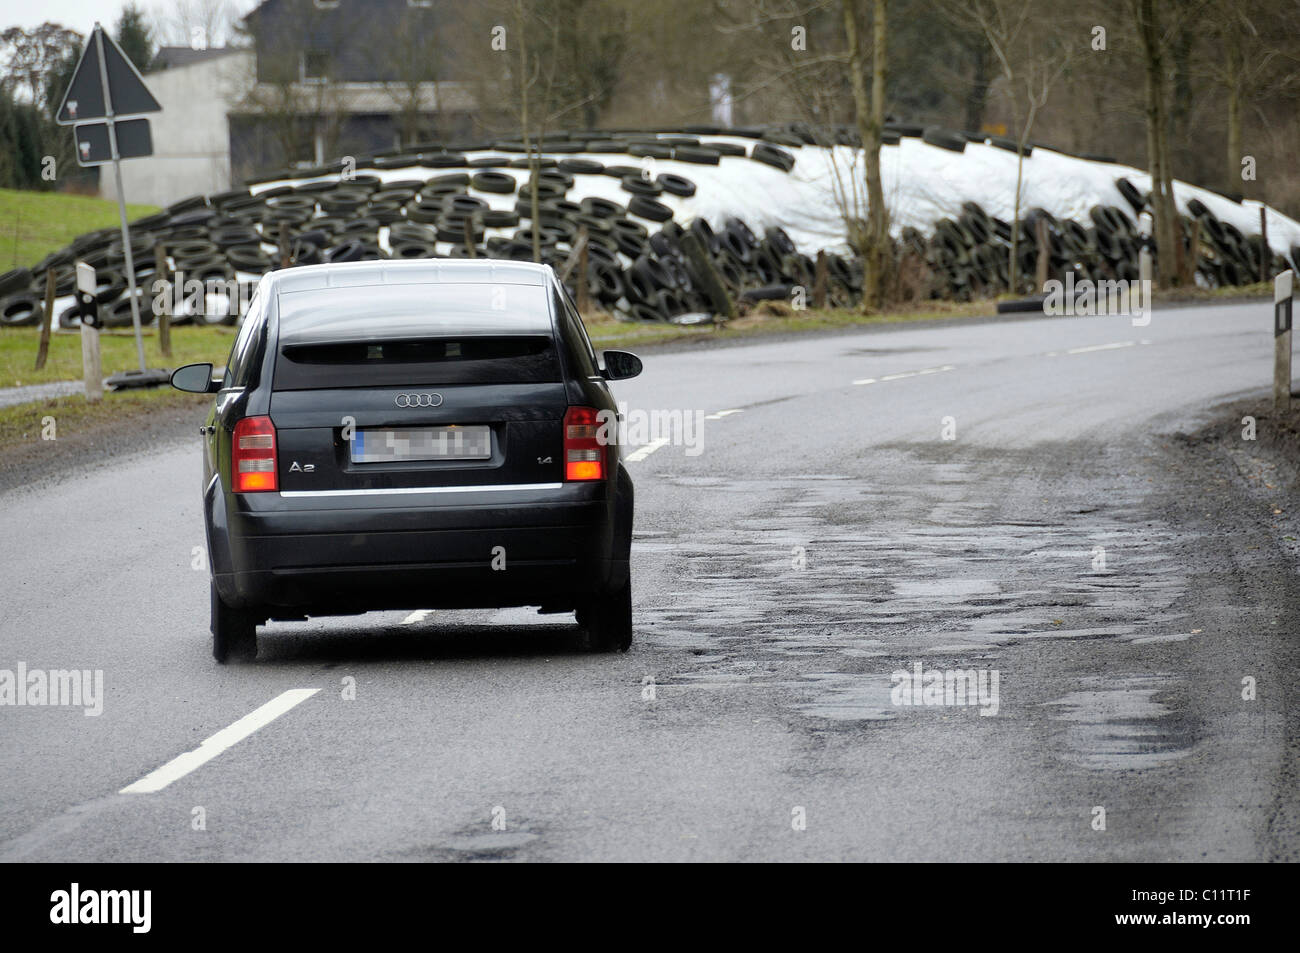 Car avoiding potholes, road damage on the L286, North Rhine-Westphalia, Germany, Europe Stock Photo